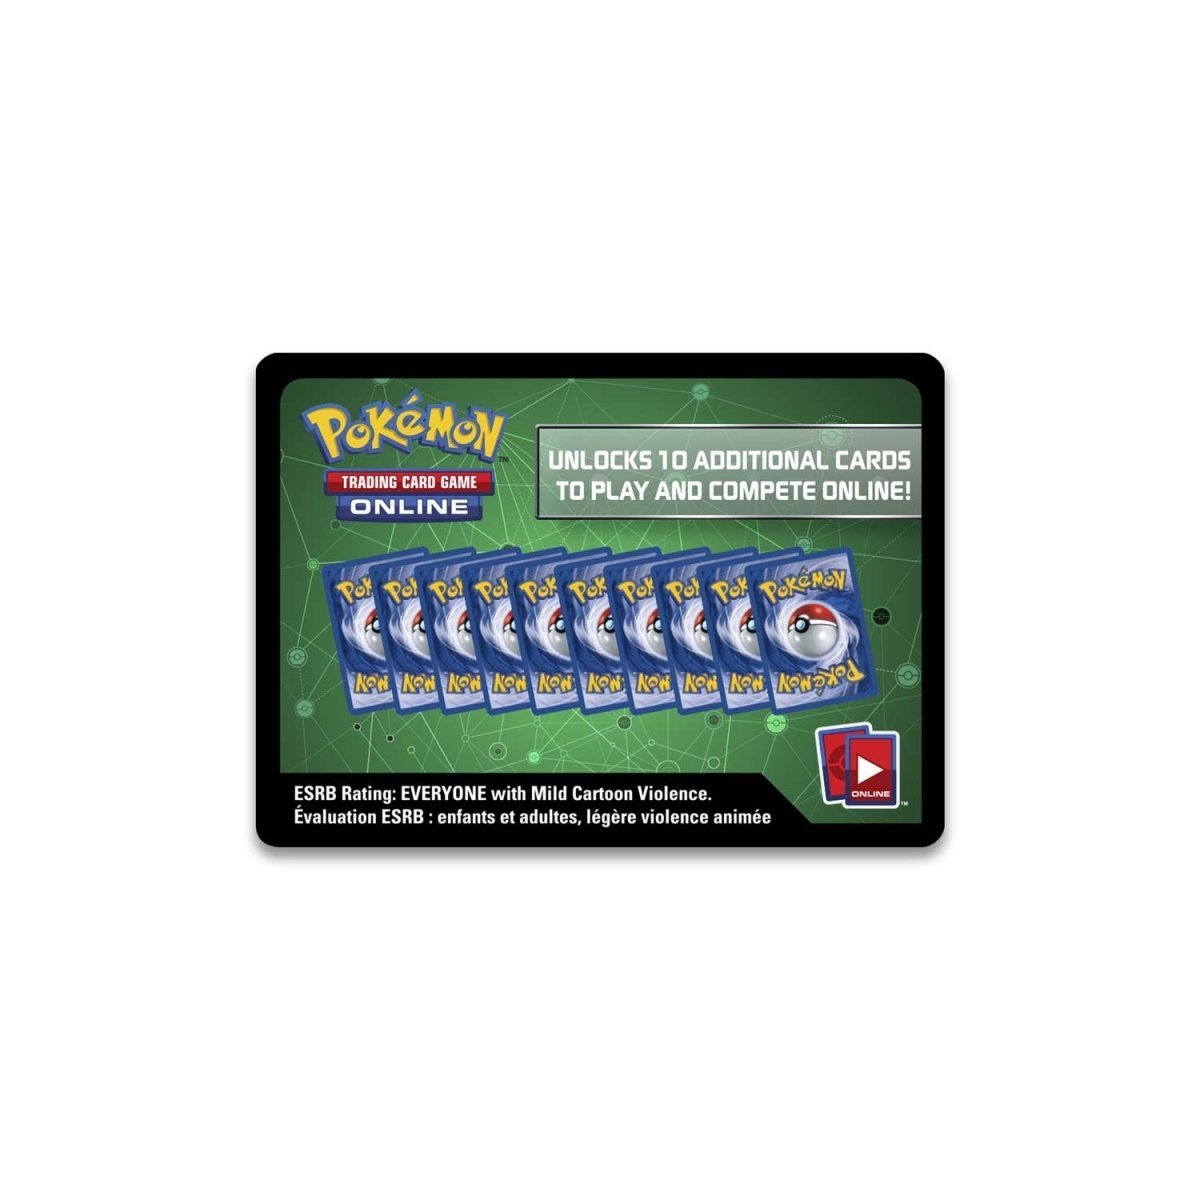 Pokémon TCG: Celebrations Deluxe Pin Collection Box - PokeRvmCollection Box